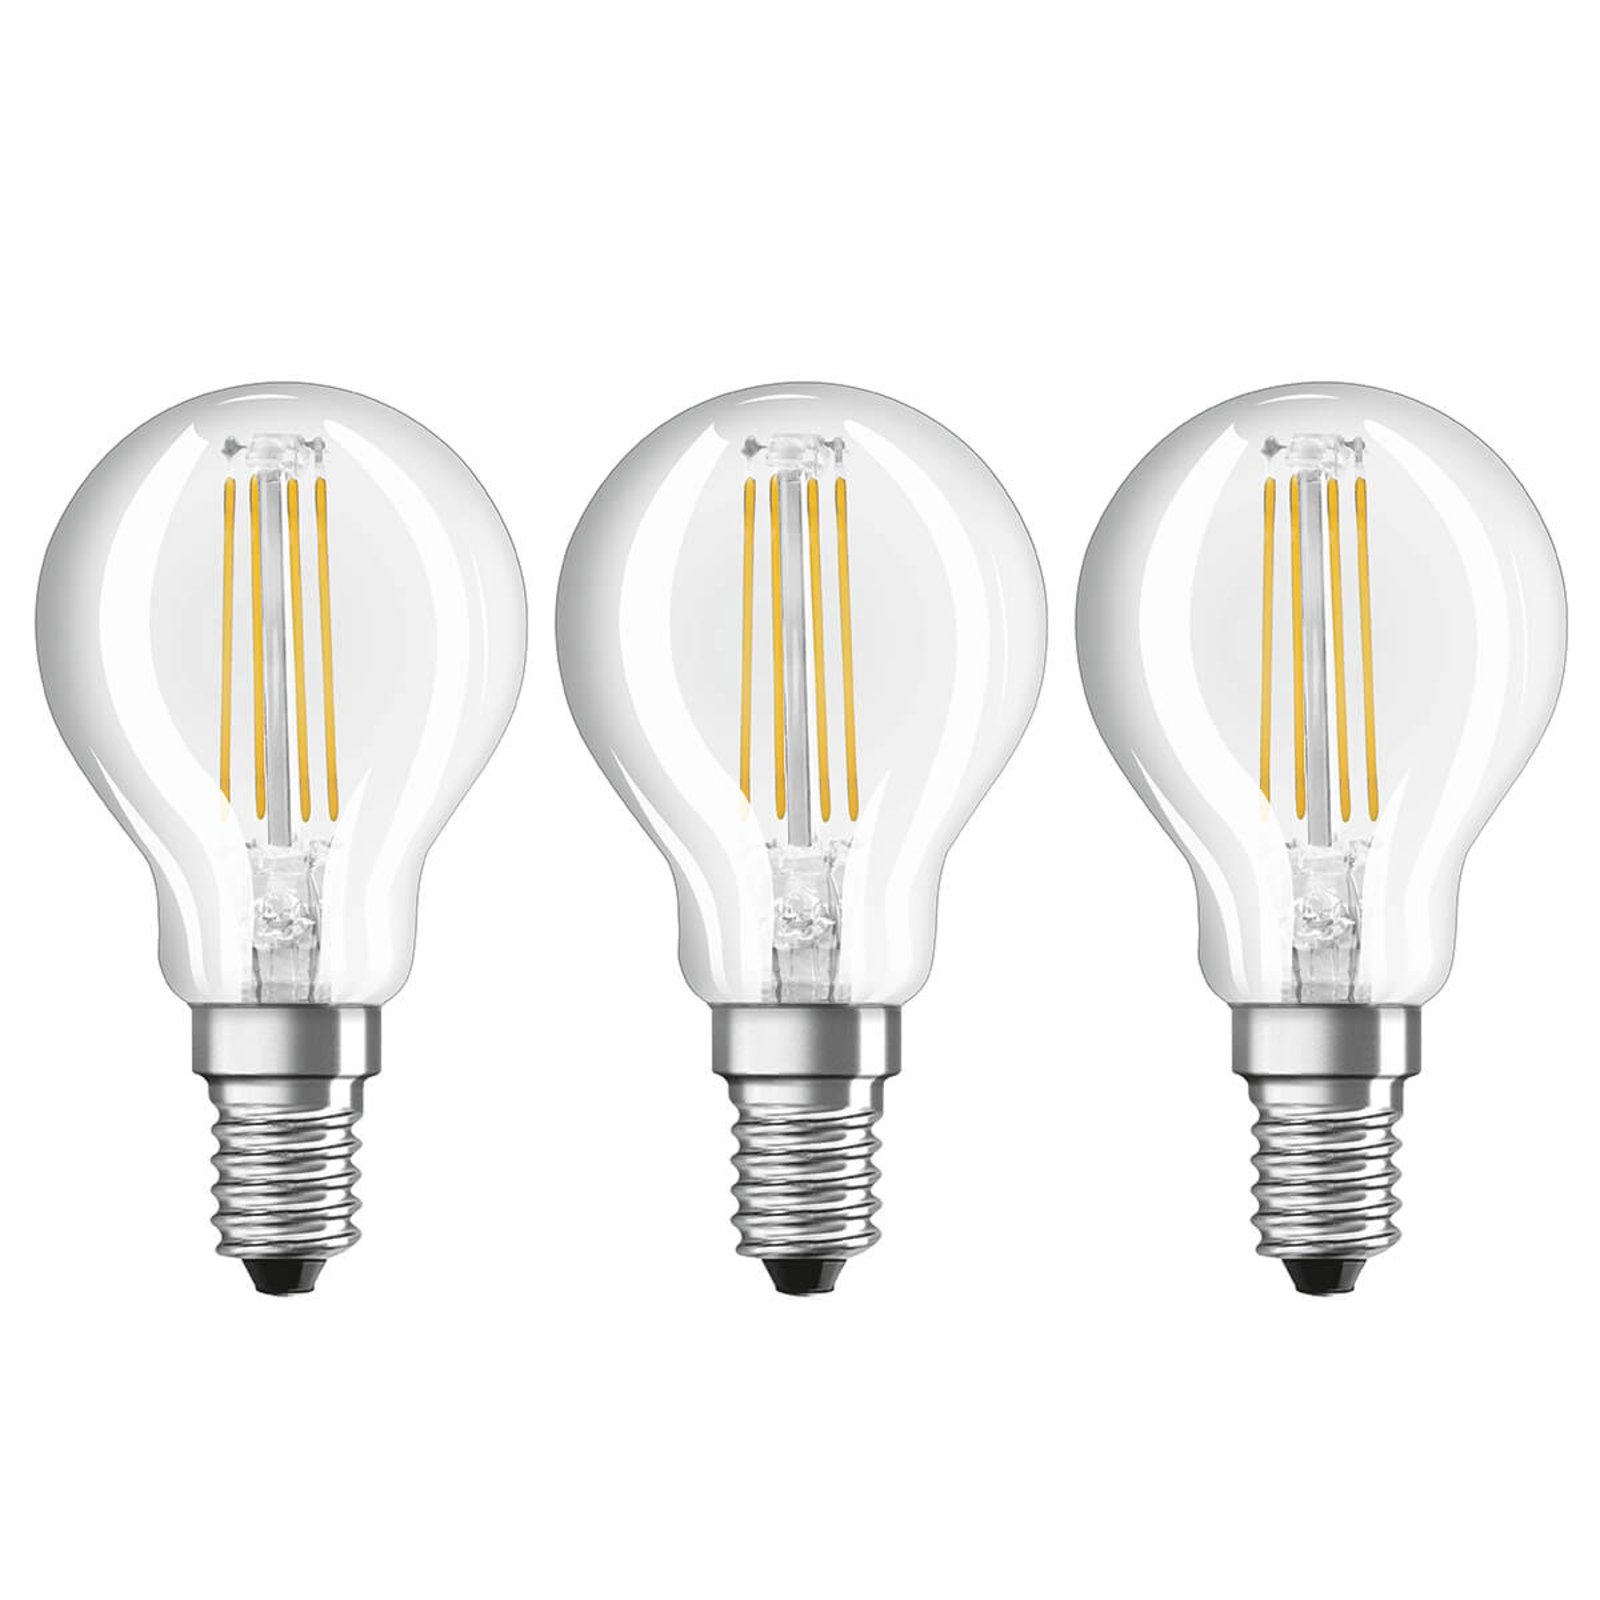 LED-filamentlampa E14 4 W, varmvit, 3-pack